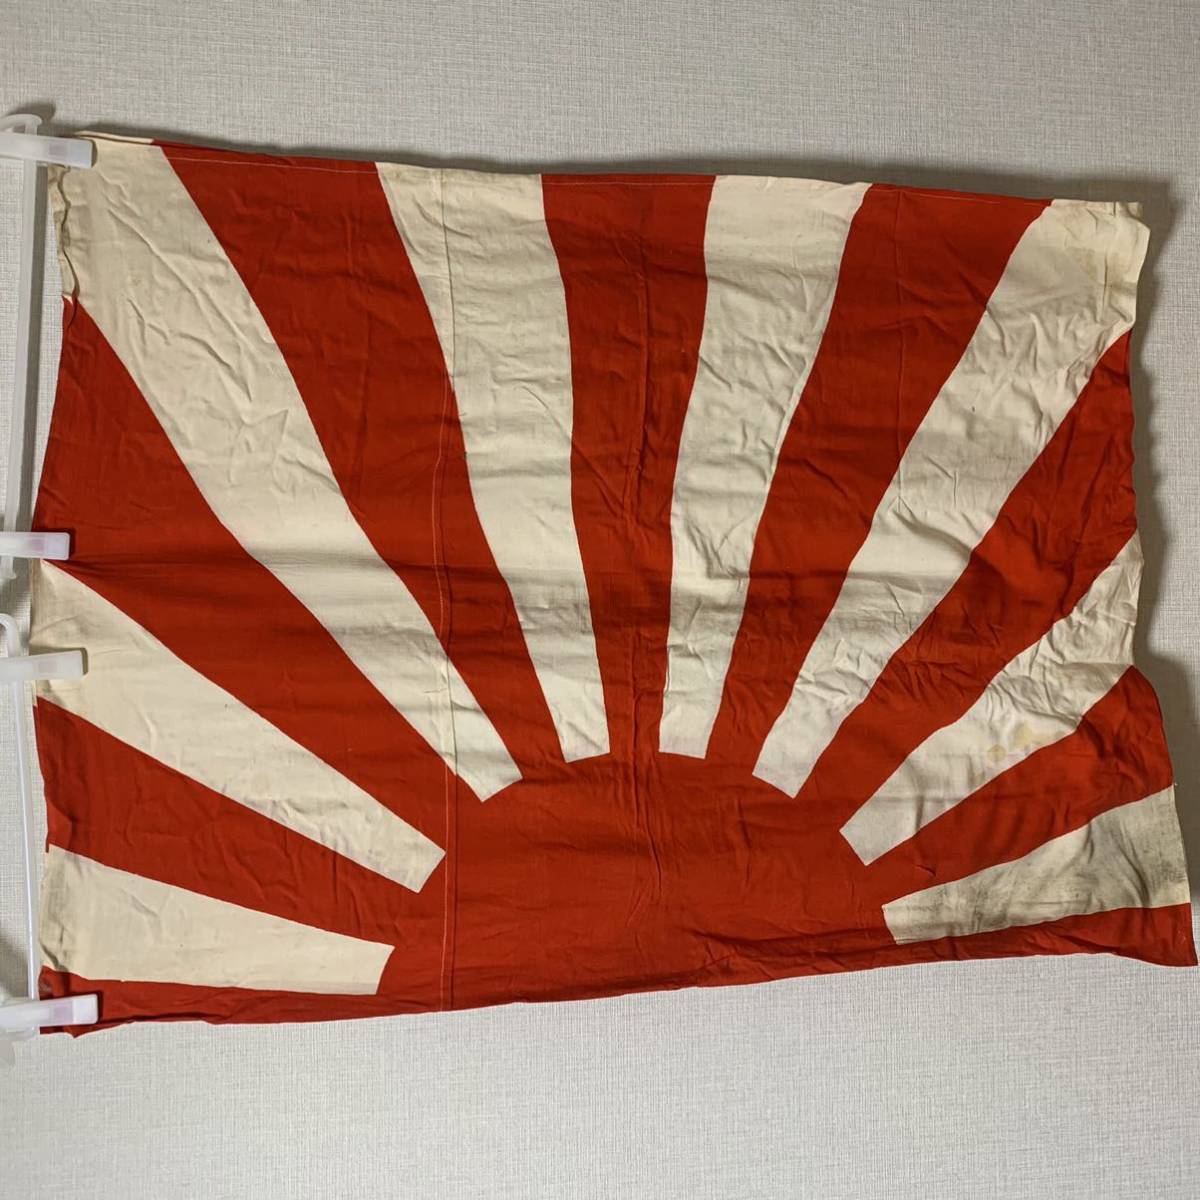 レア 日本軍 日章旗 巨大 旗 陸軍 戦前 大日本帝国 海軍 蔵出 戦前資料 